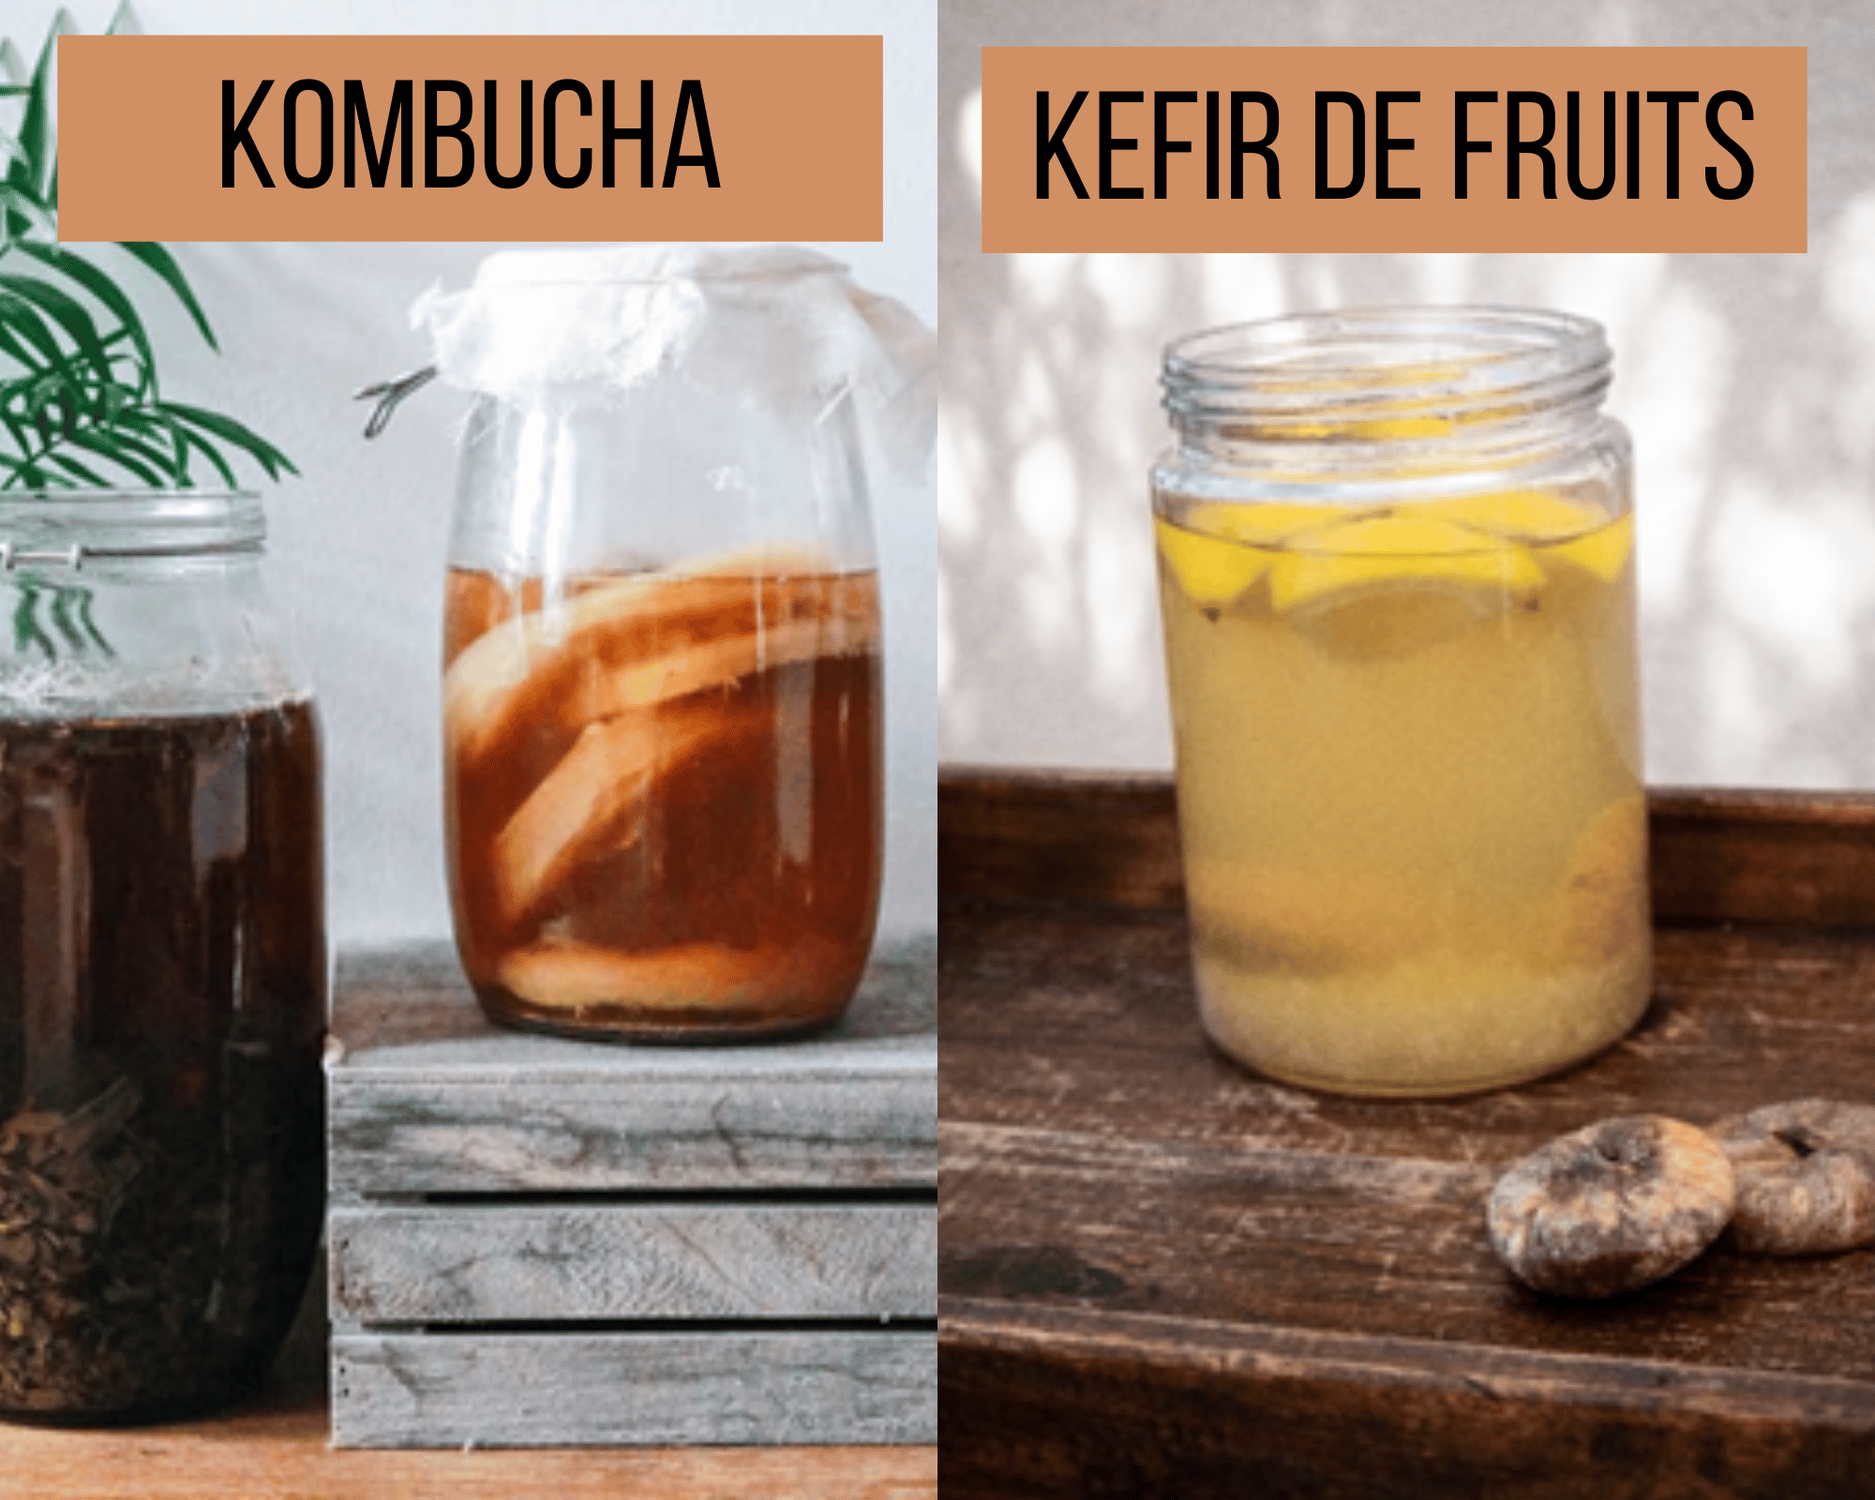 kéfir de fruits et Kombucha